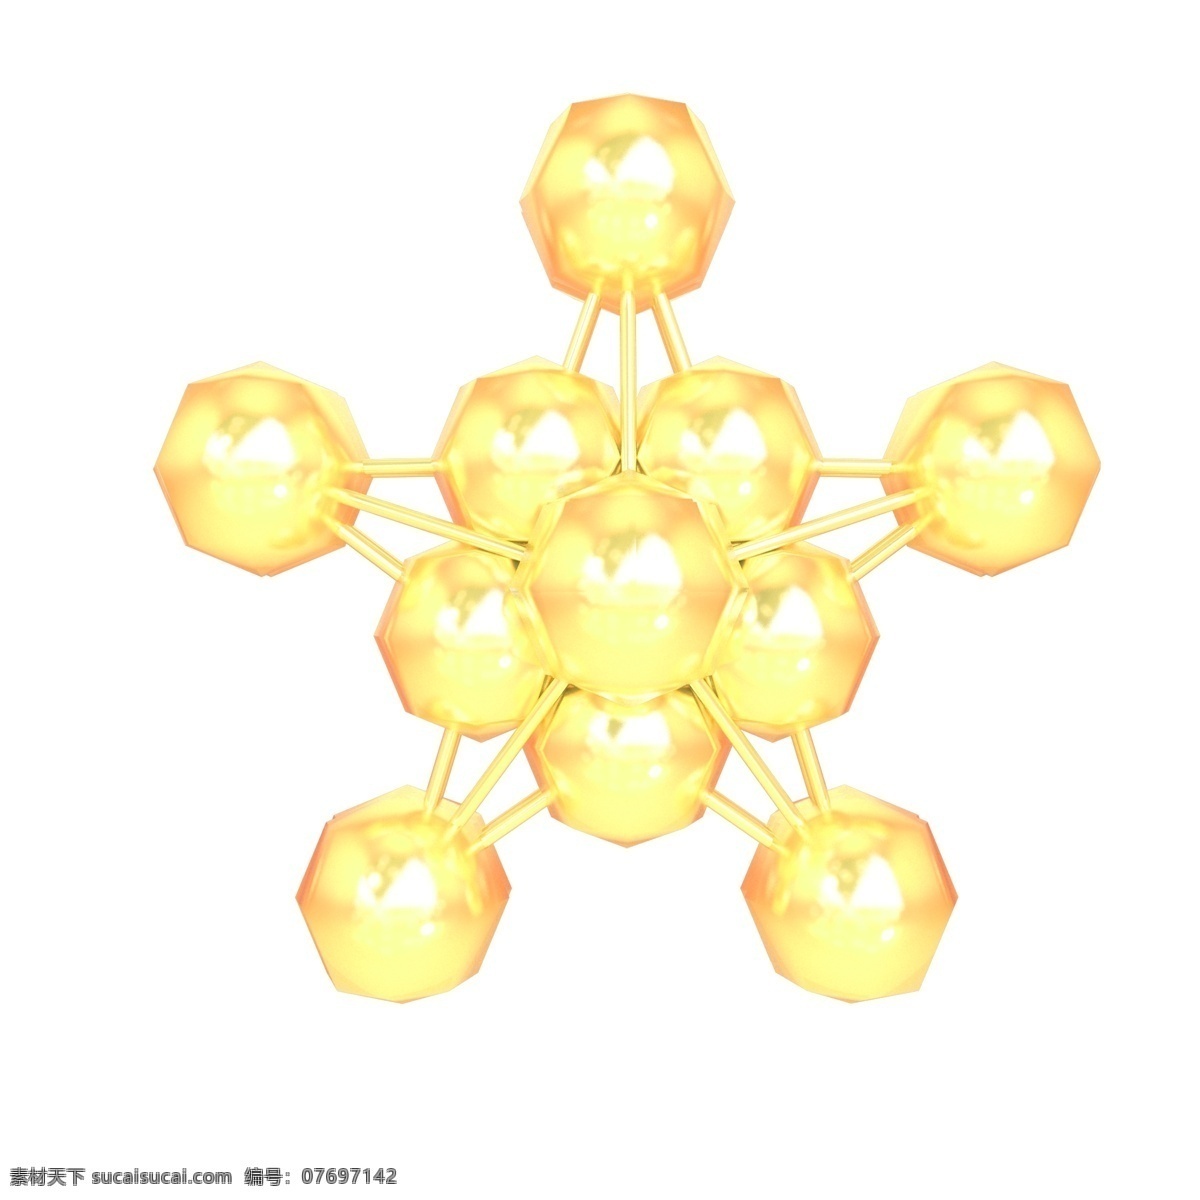 金色 金属 五角星 立体 星星 元素 商用 星 3d 金星 c4d 立体星星 金属星